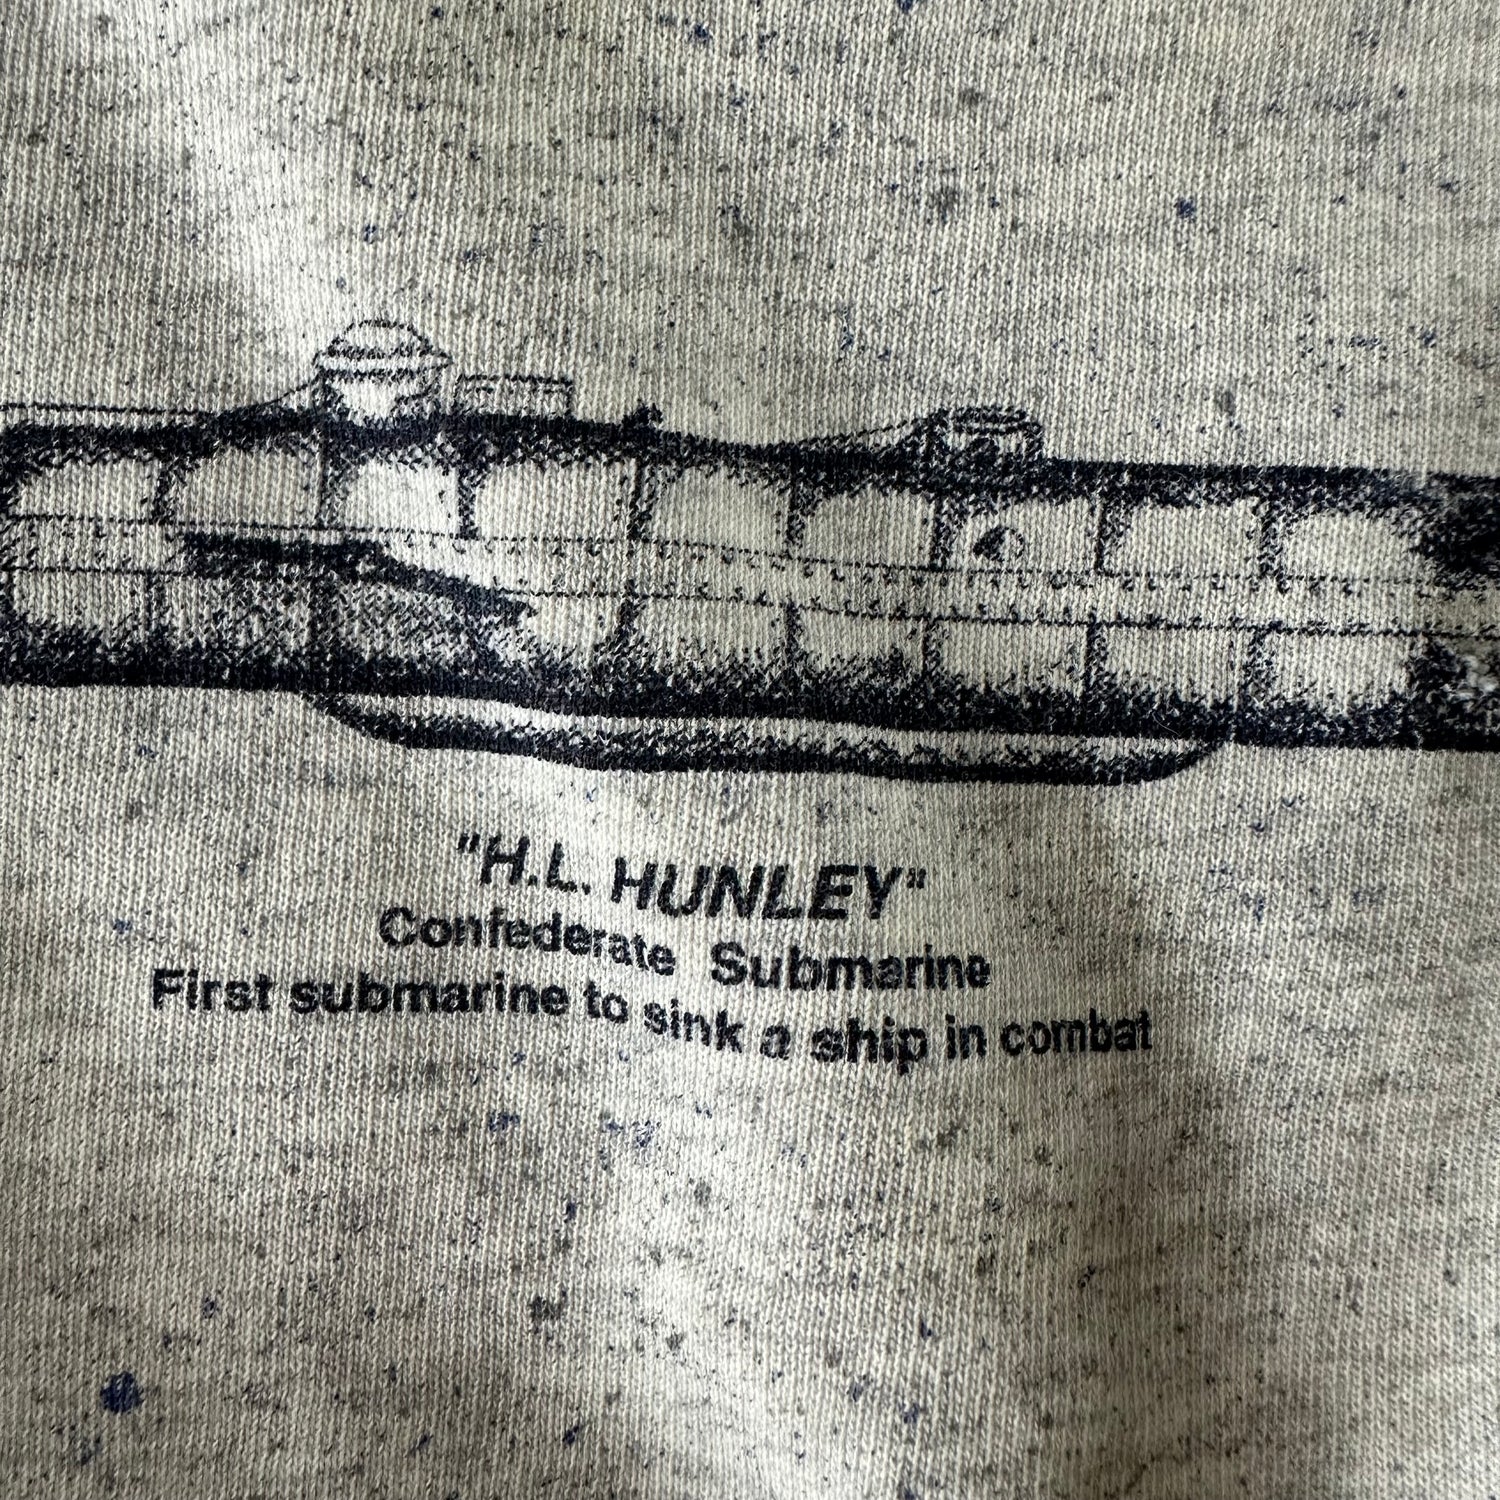 Vintage 1990s Civil War Sweatshirt size XL